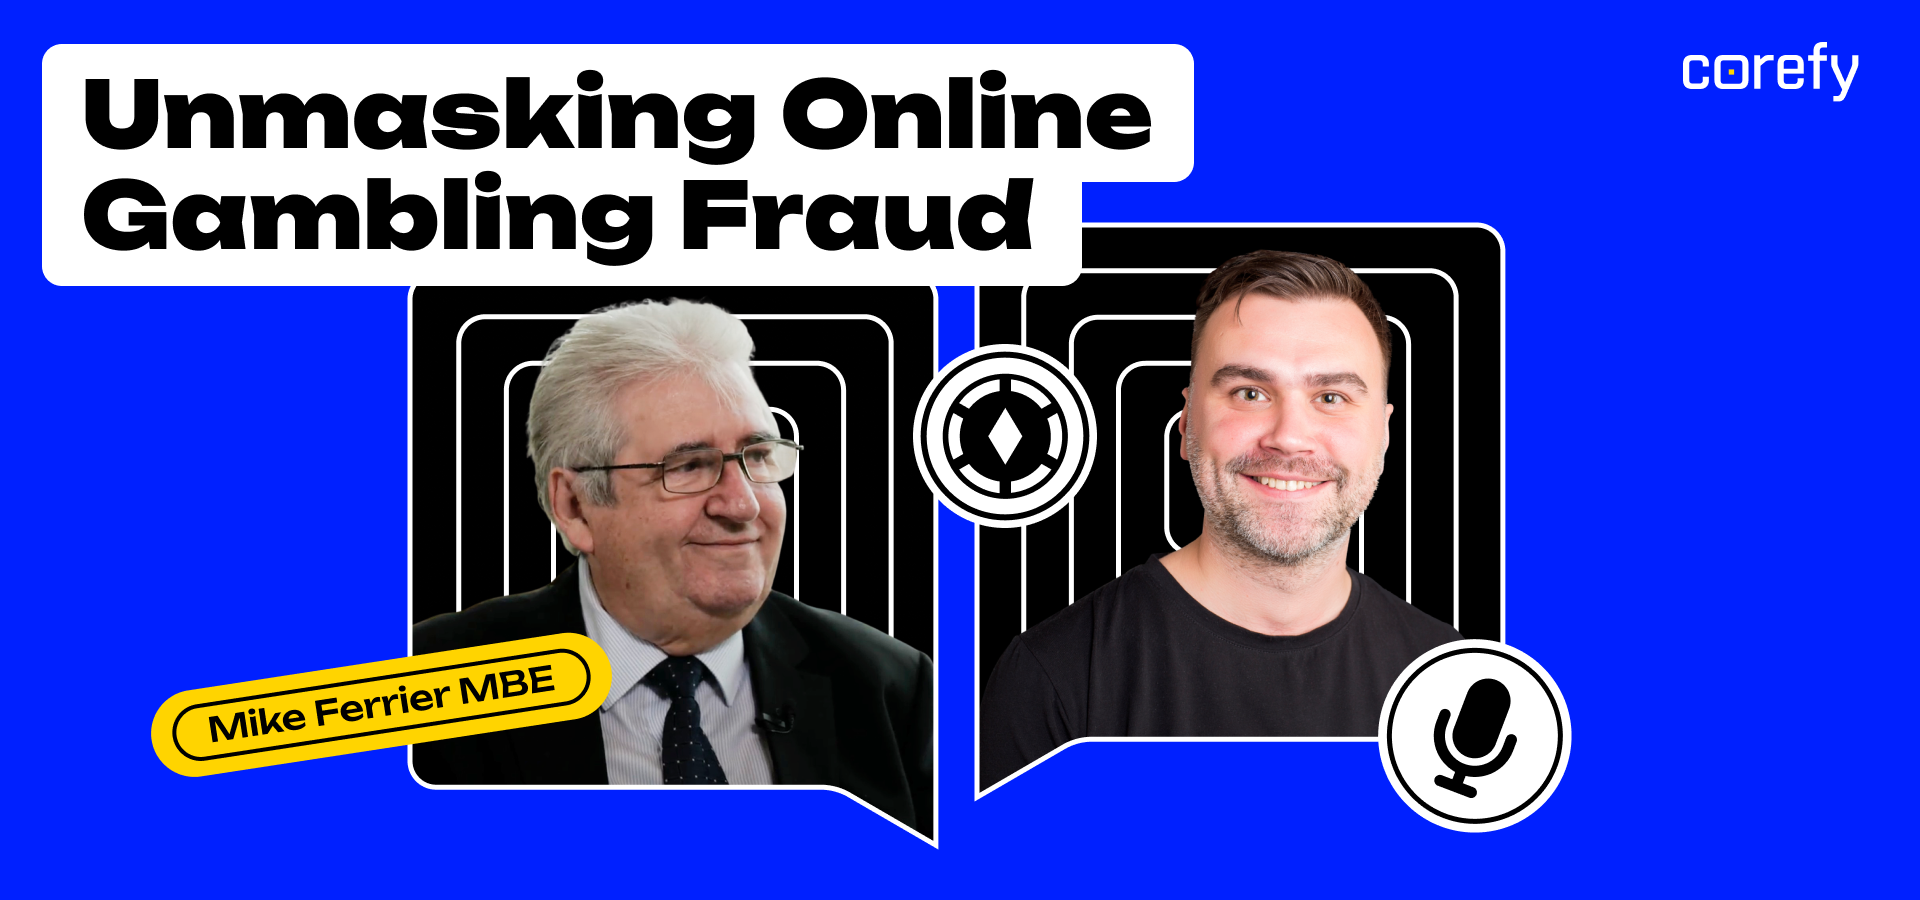 Unmasking online gambling fraud